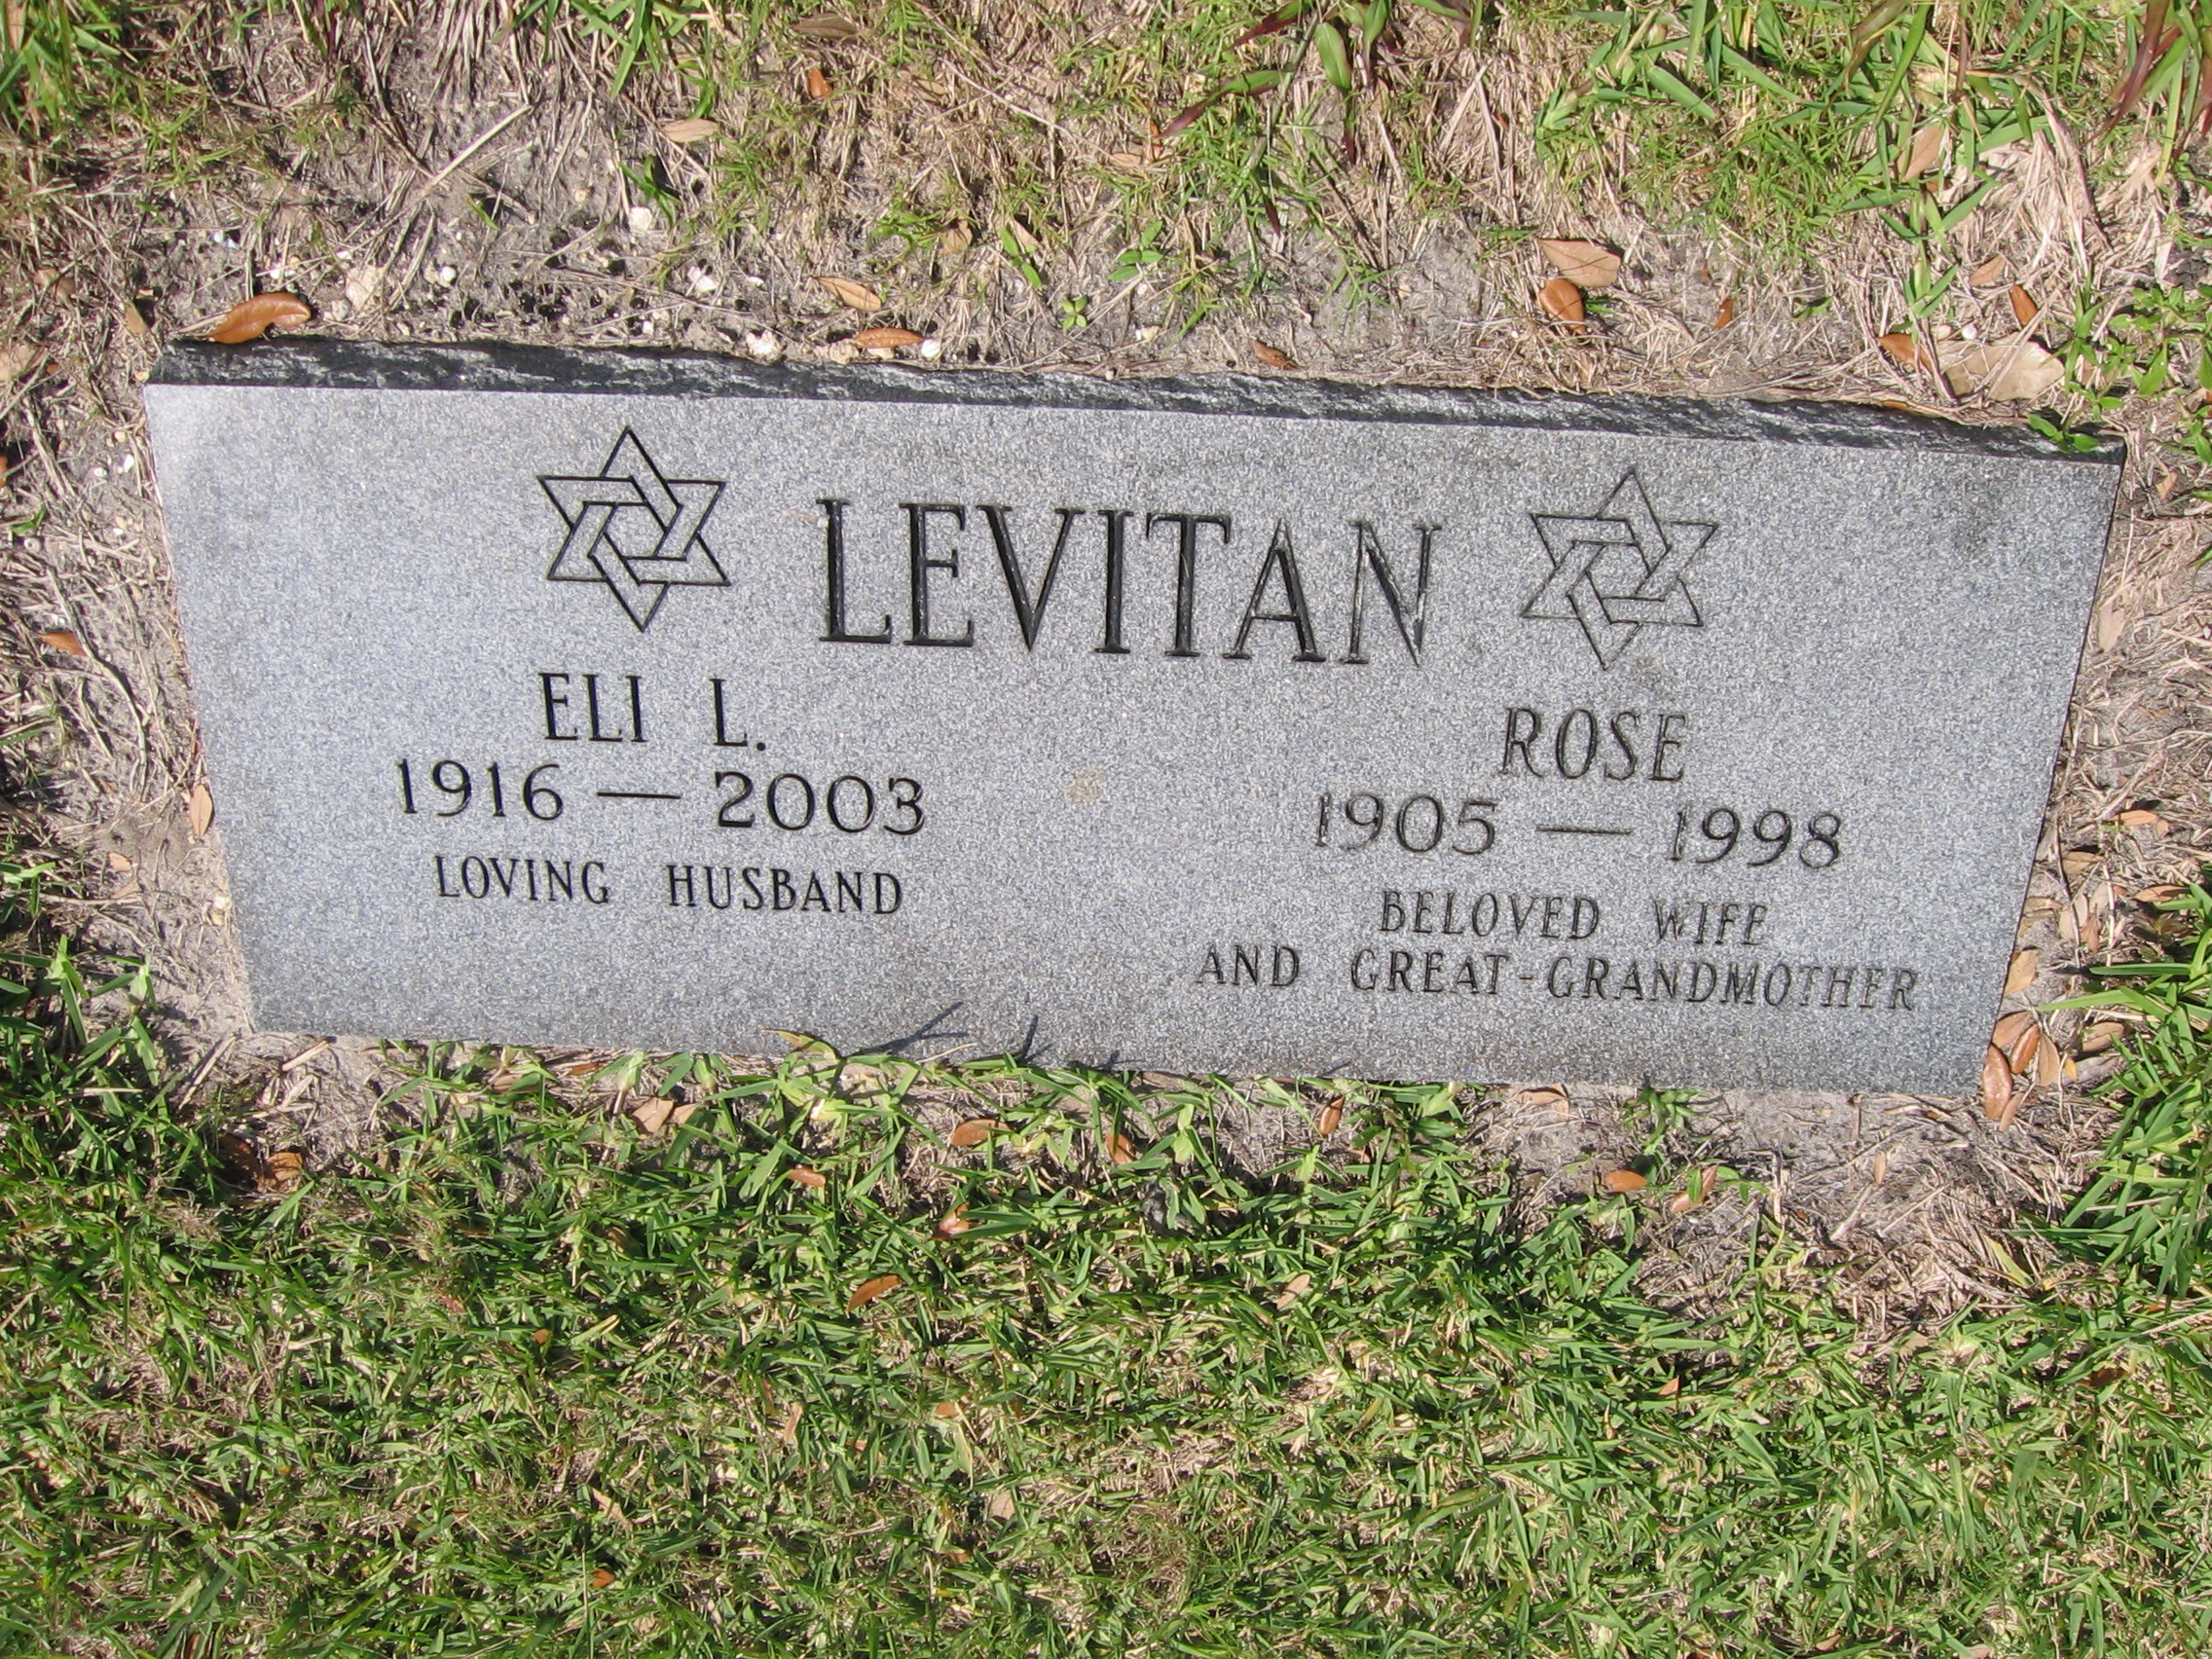 Rose Levitan